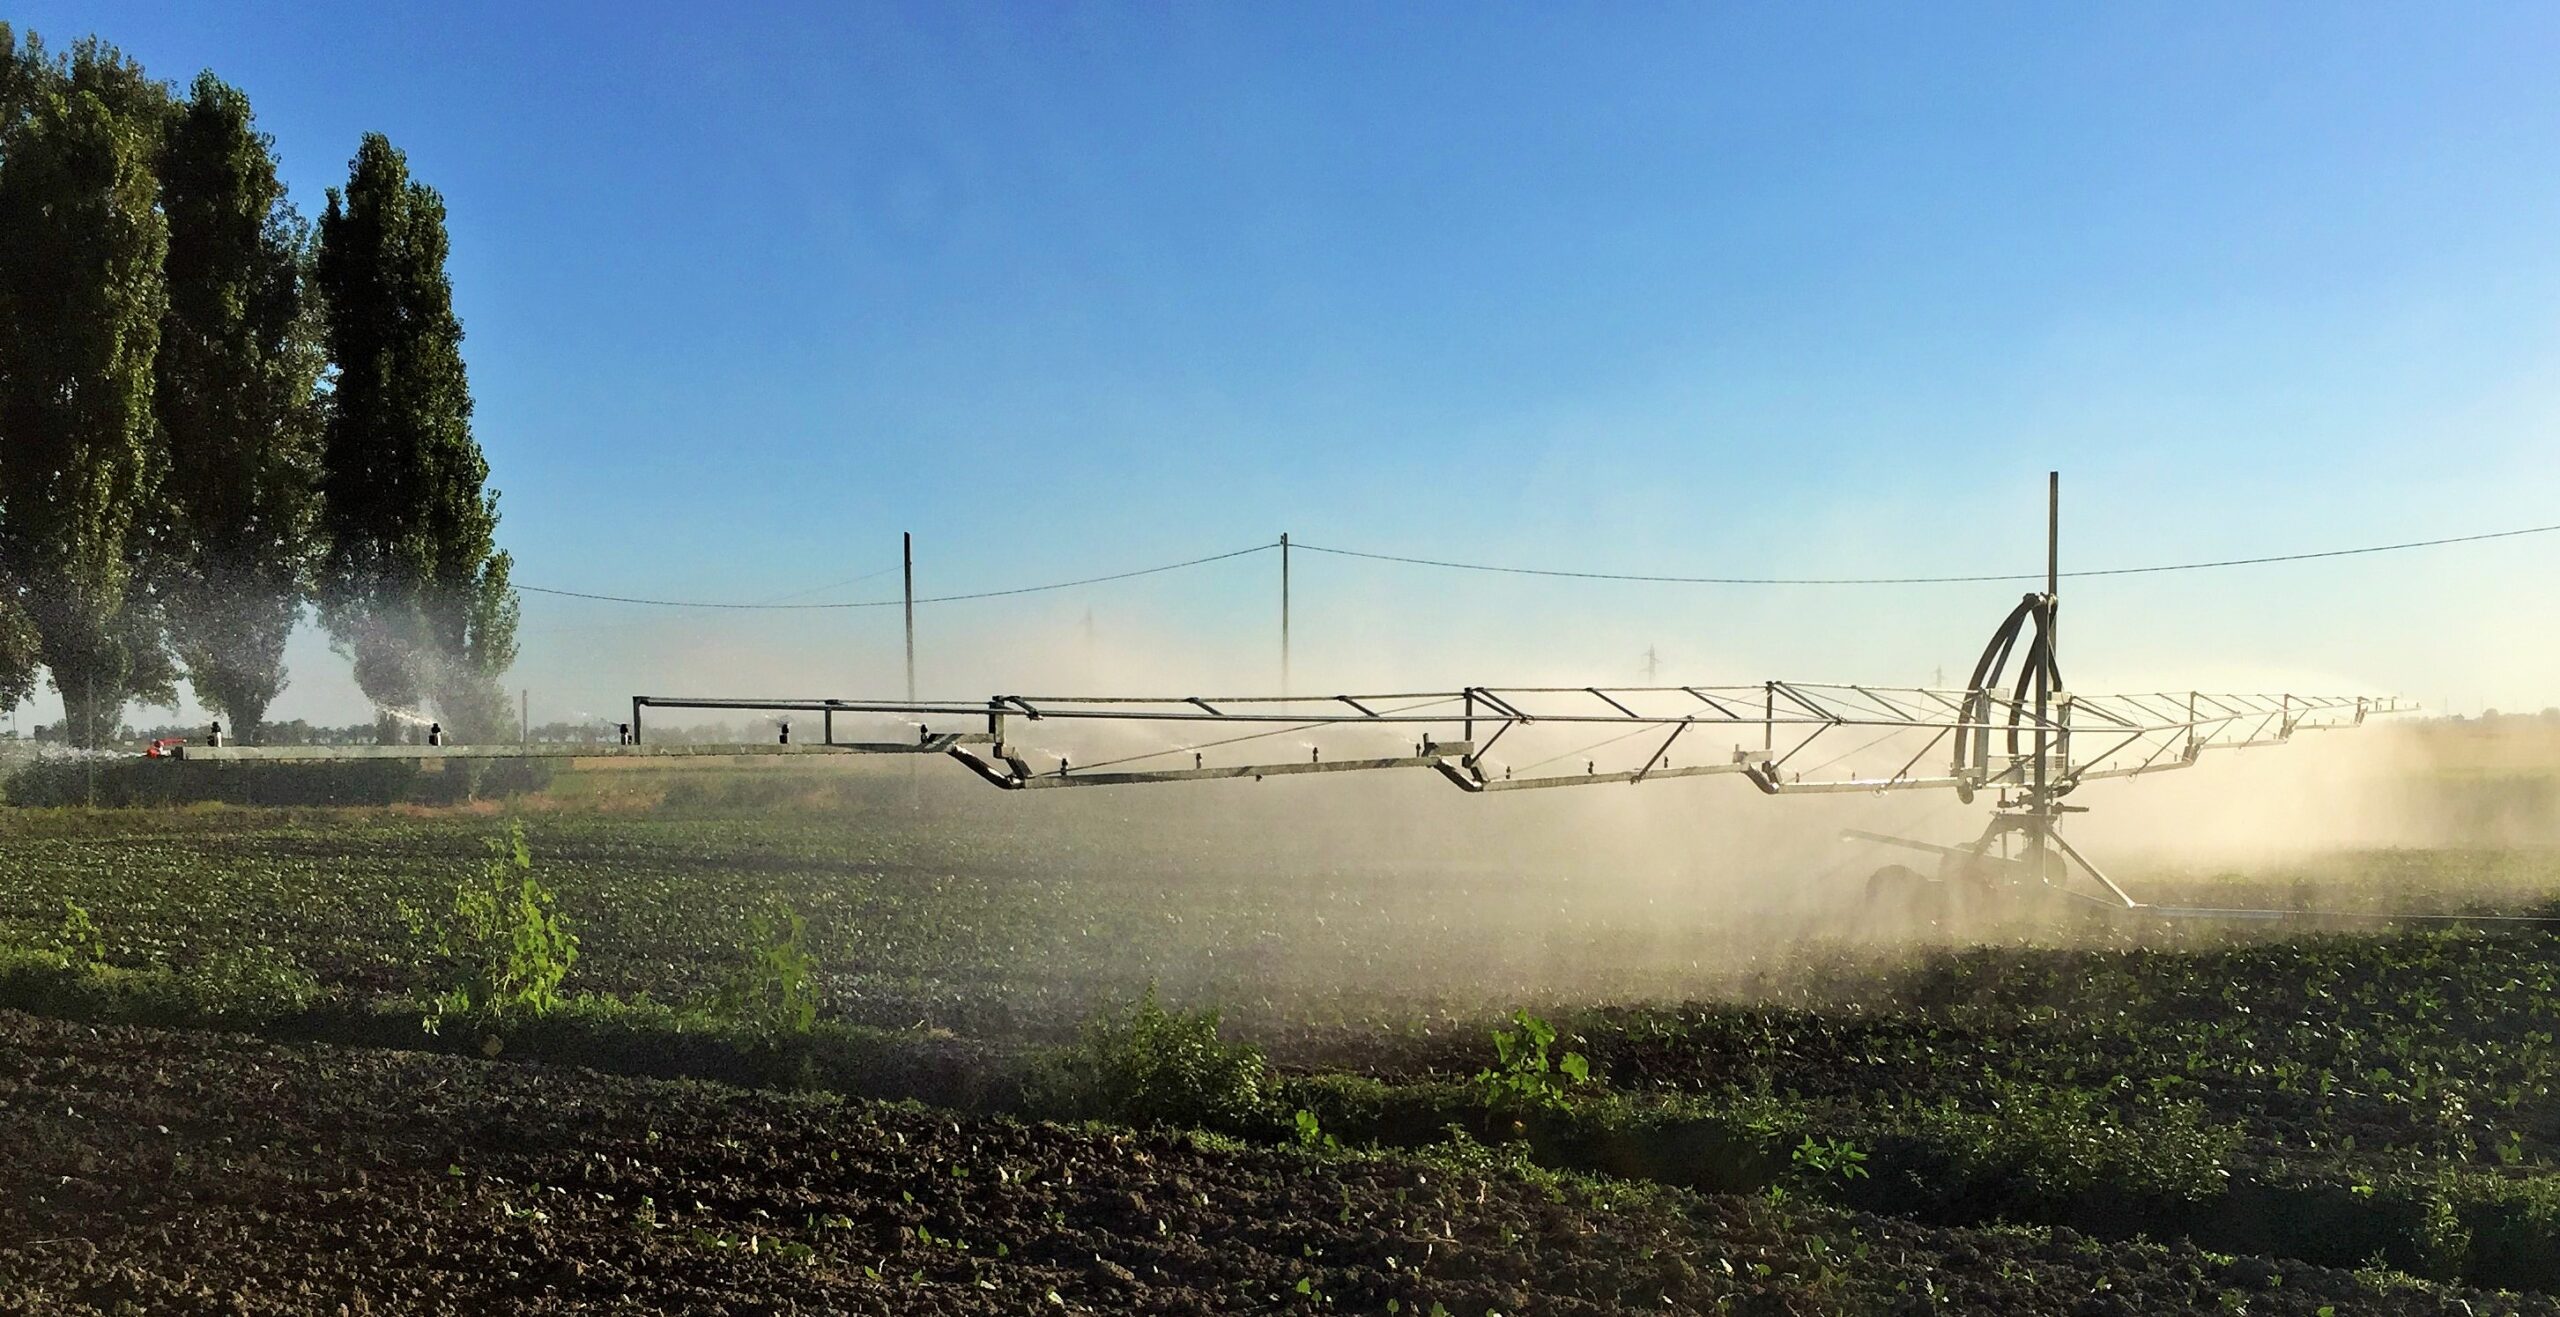 Un'ala piovana in azione in un campo composta un braccio d'acciaio di diversi metri supportata da un carrello in fase di irrigazione.